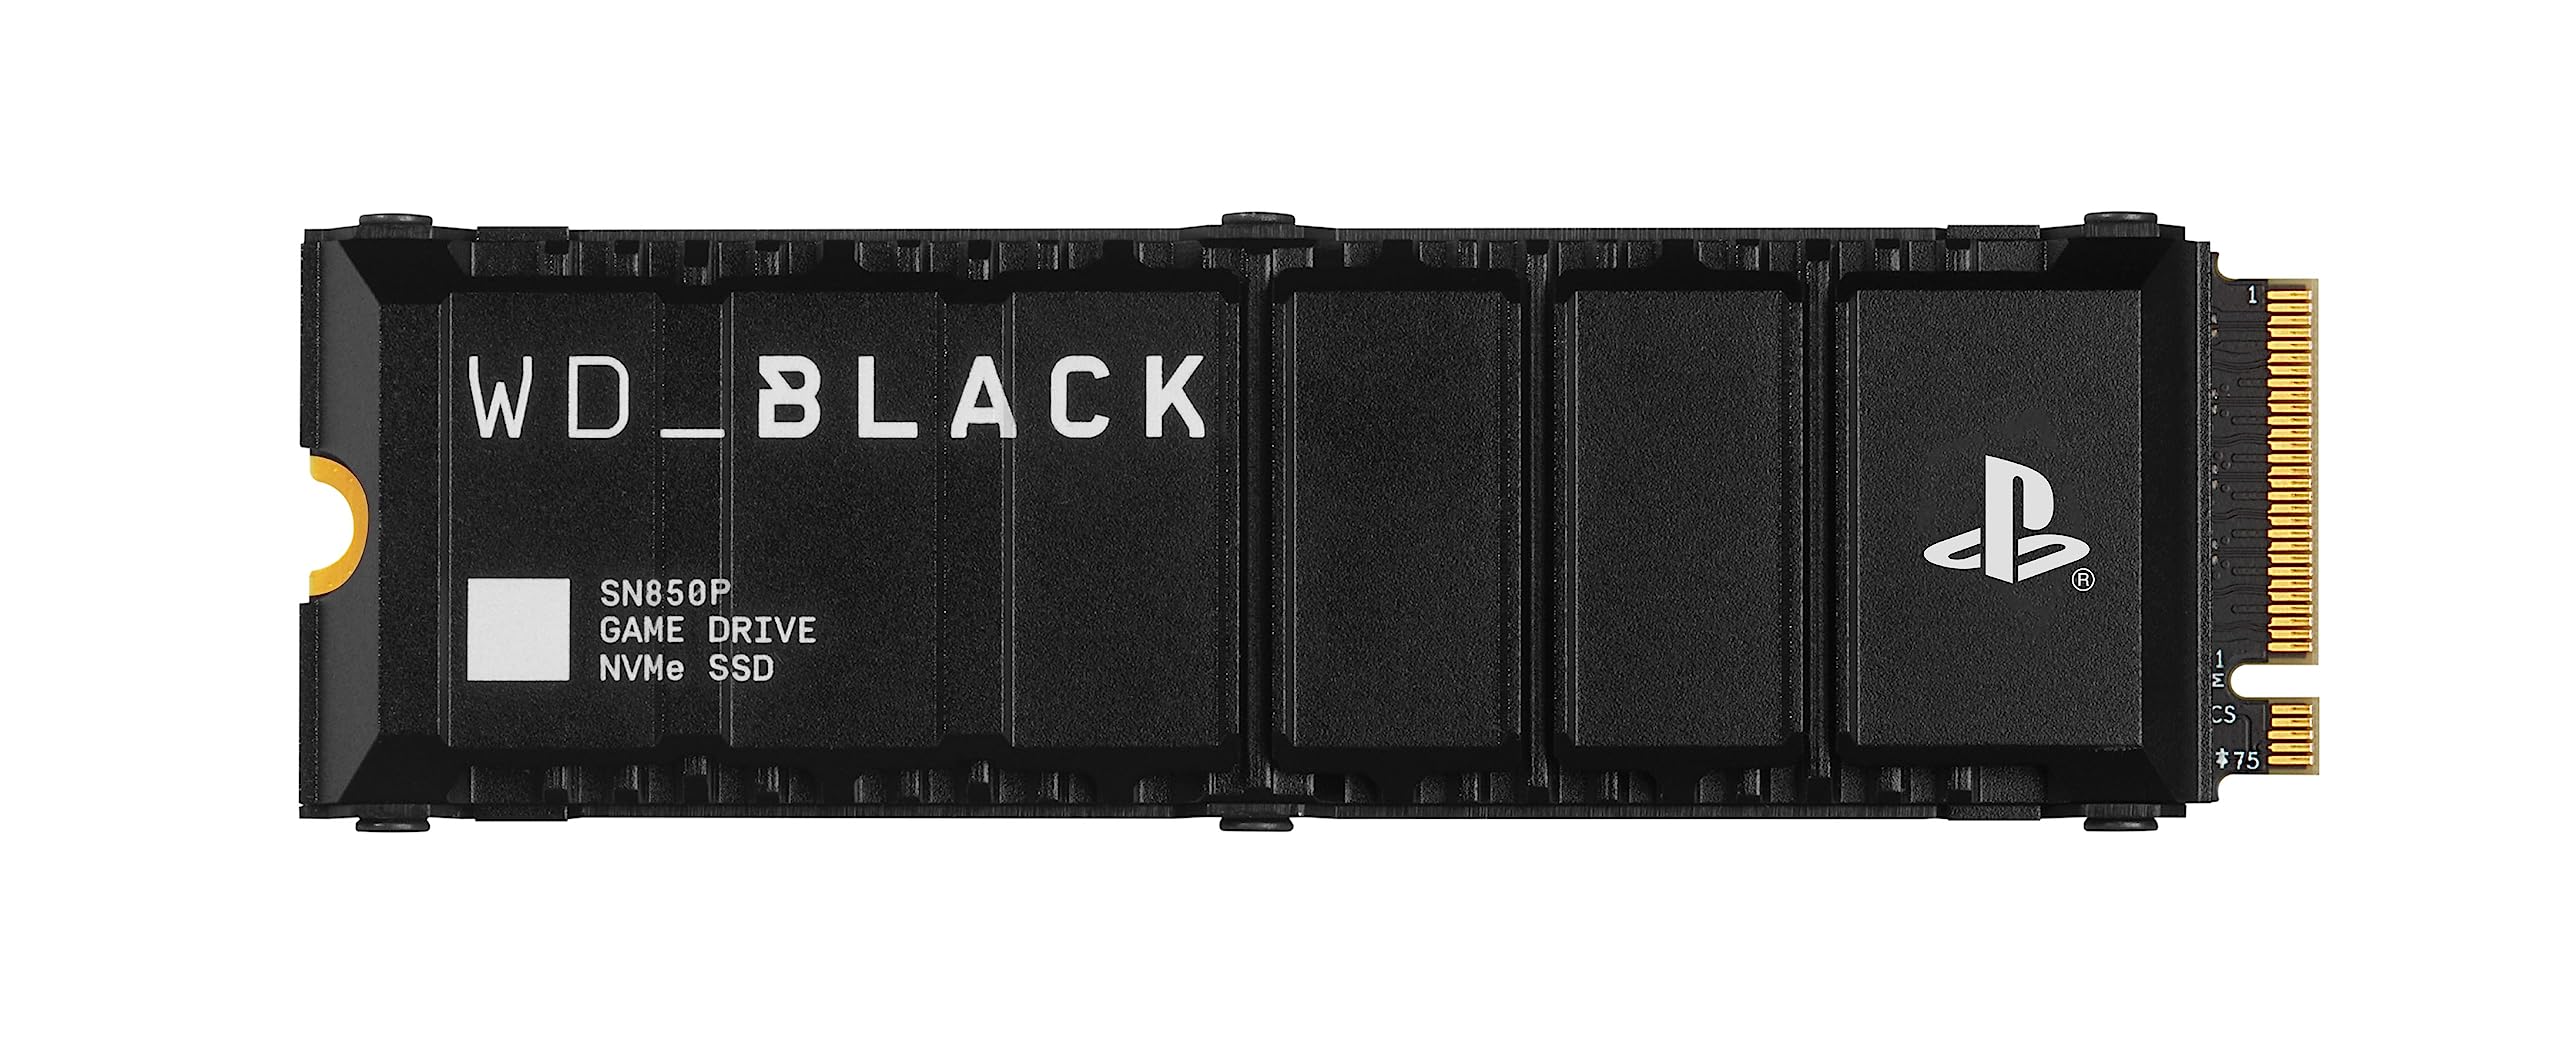 WD_BLACK SN850P 2 TB NVMe SSD Offiziell Lizenziert für PS5 Konsolen (interne Gaming SSD; optimierter Kühlkörper; PCIe Gen4 Technologie, bis zu 7.300 MB/s Lesen, M.2 2280)